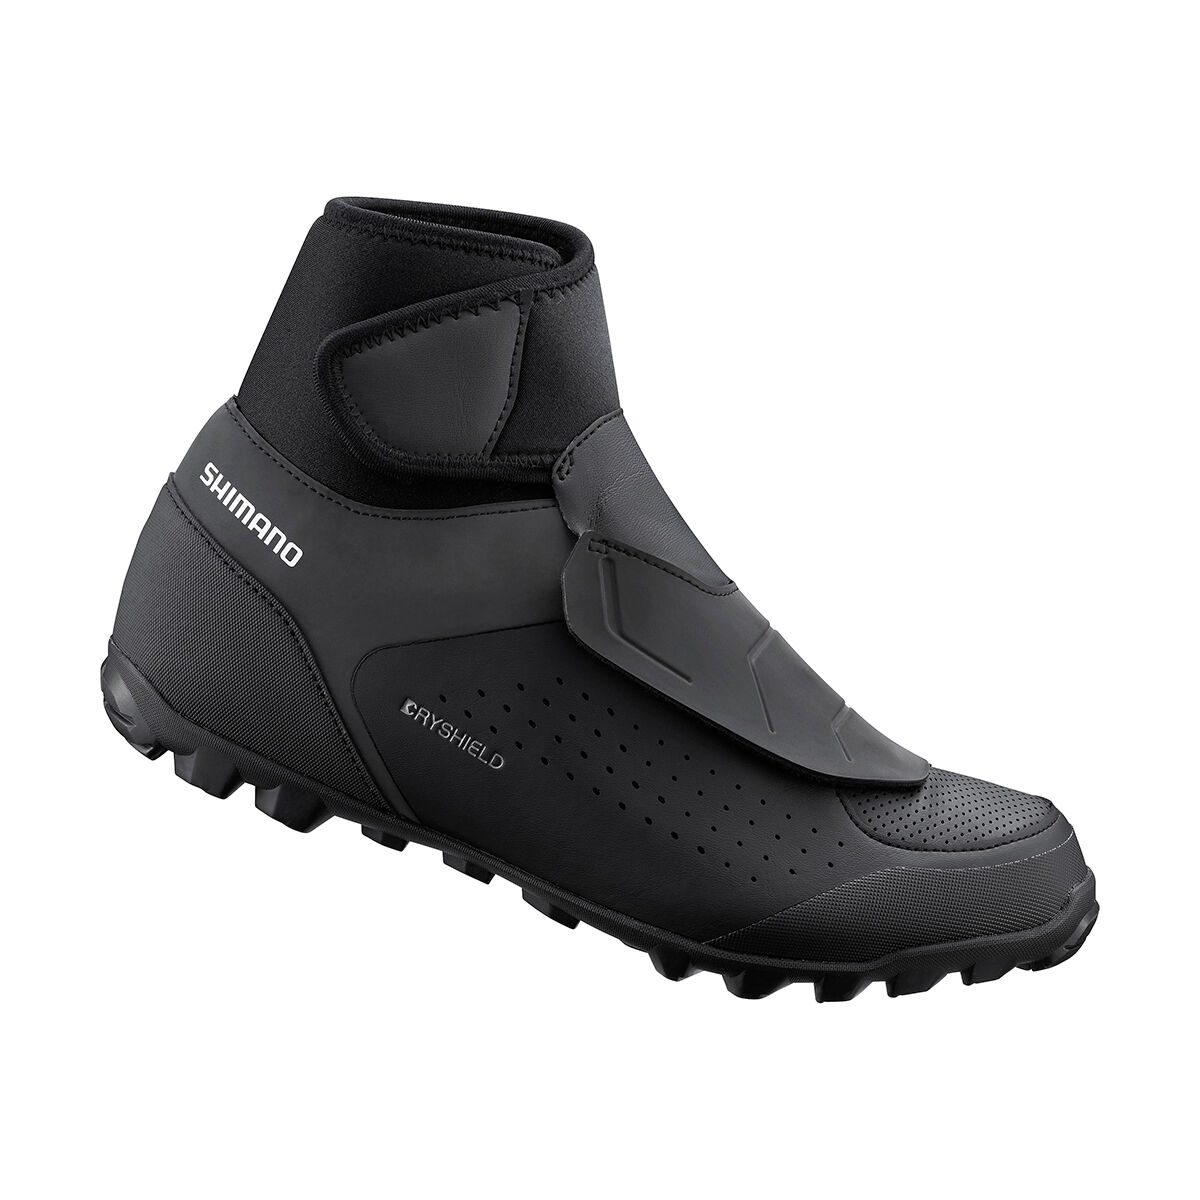 Shimano MW501 - Mountain Bike shoes - Men's